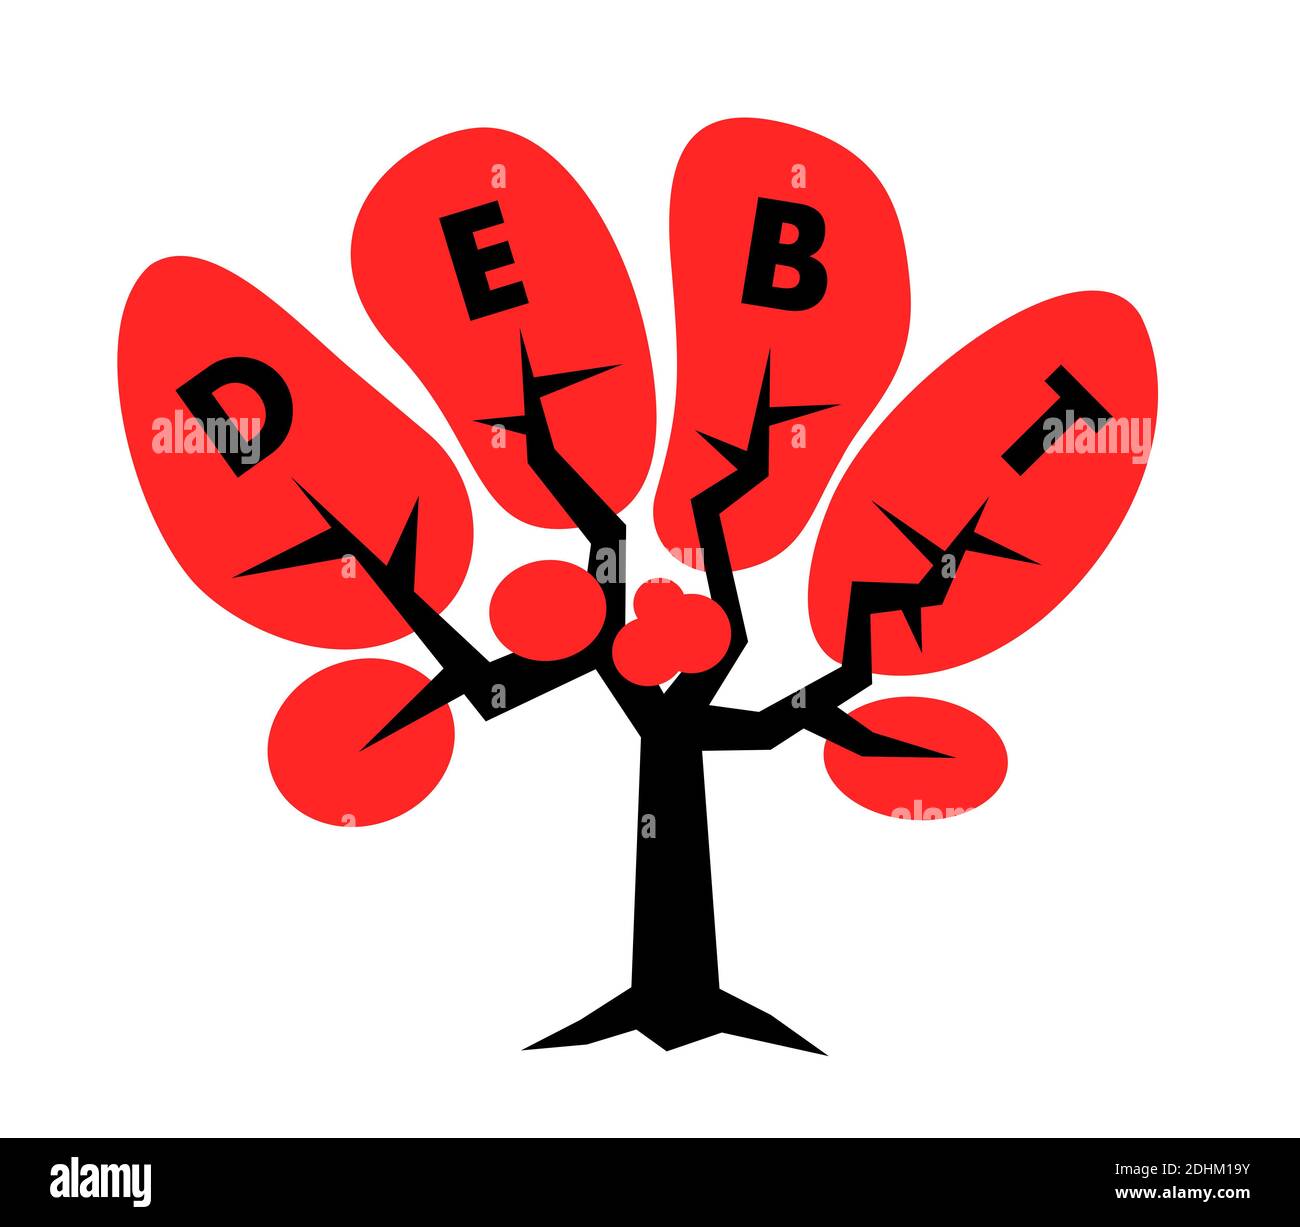 Arbre avec texte de dette dans la couronne - endettement financier est en croissance - augmentation de la liabilitiesa et des prêts - négatif l'économie avec un fardeau économique Banque D'Images